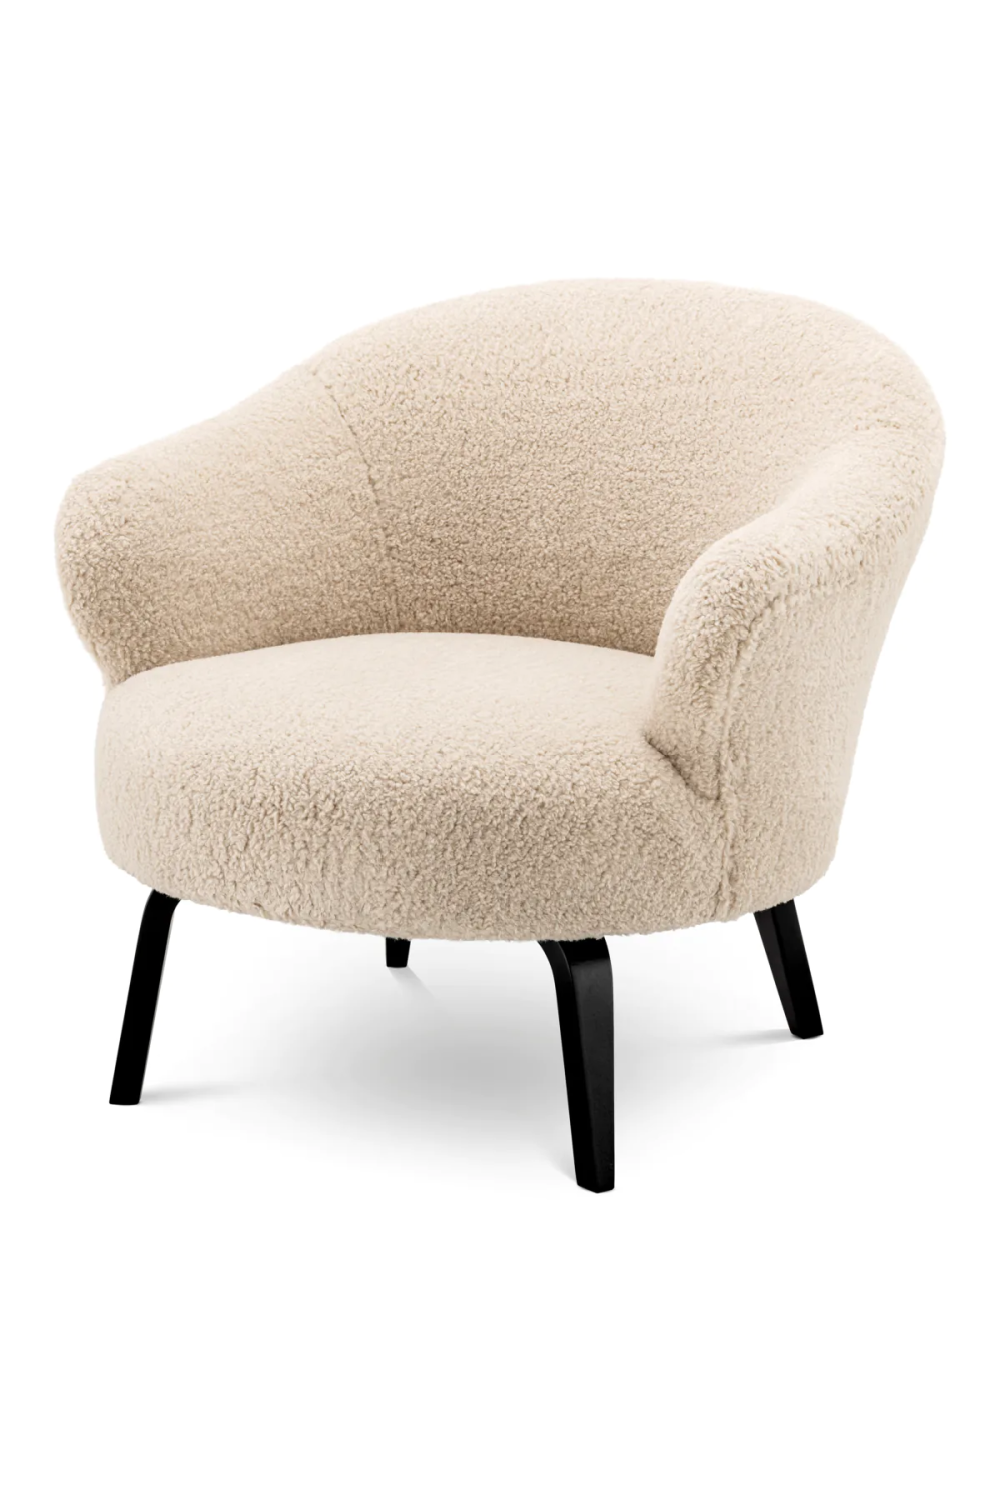 Modern Barrel Lounge Chair | Eichholtz Moretti | Oroa.com